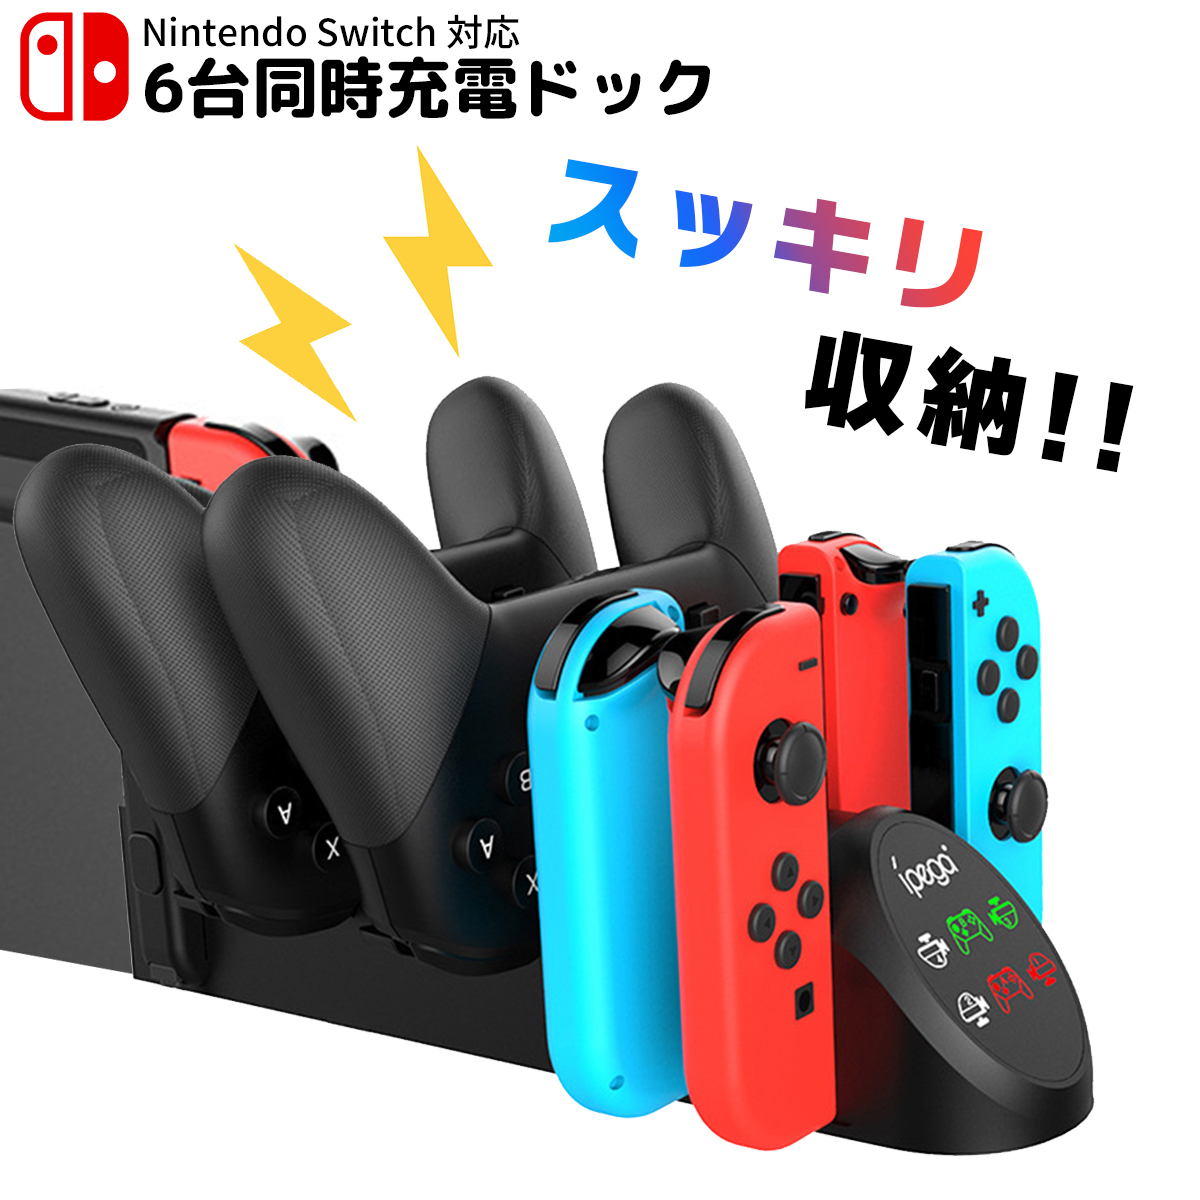 【楽天市場】Nintendo Switch スイッチ 6台同時充電 ジョイコン プロコン 充電ドック 充電スタンド Joy-Con